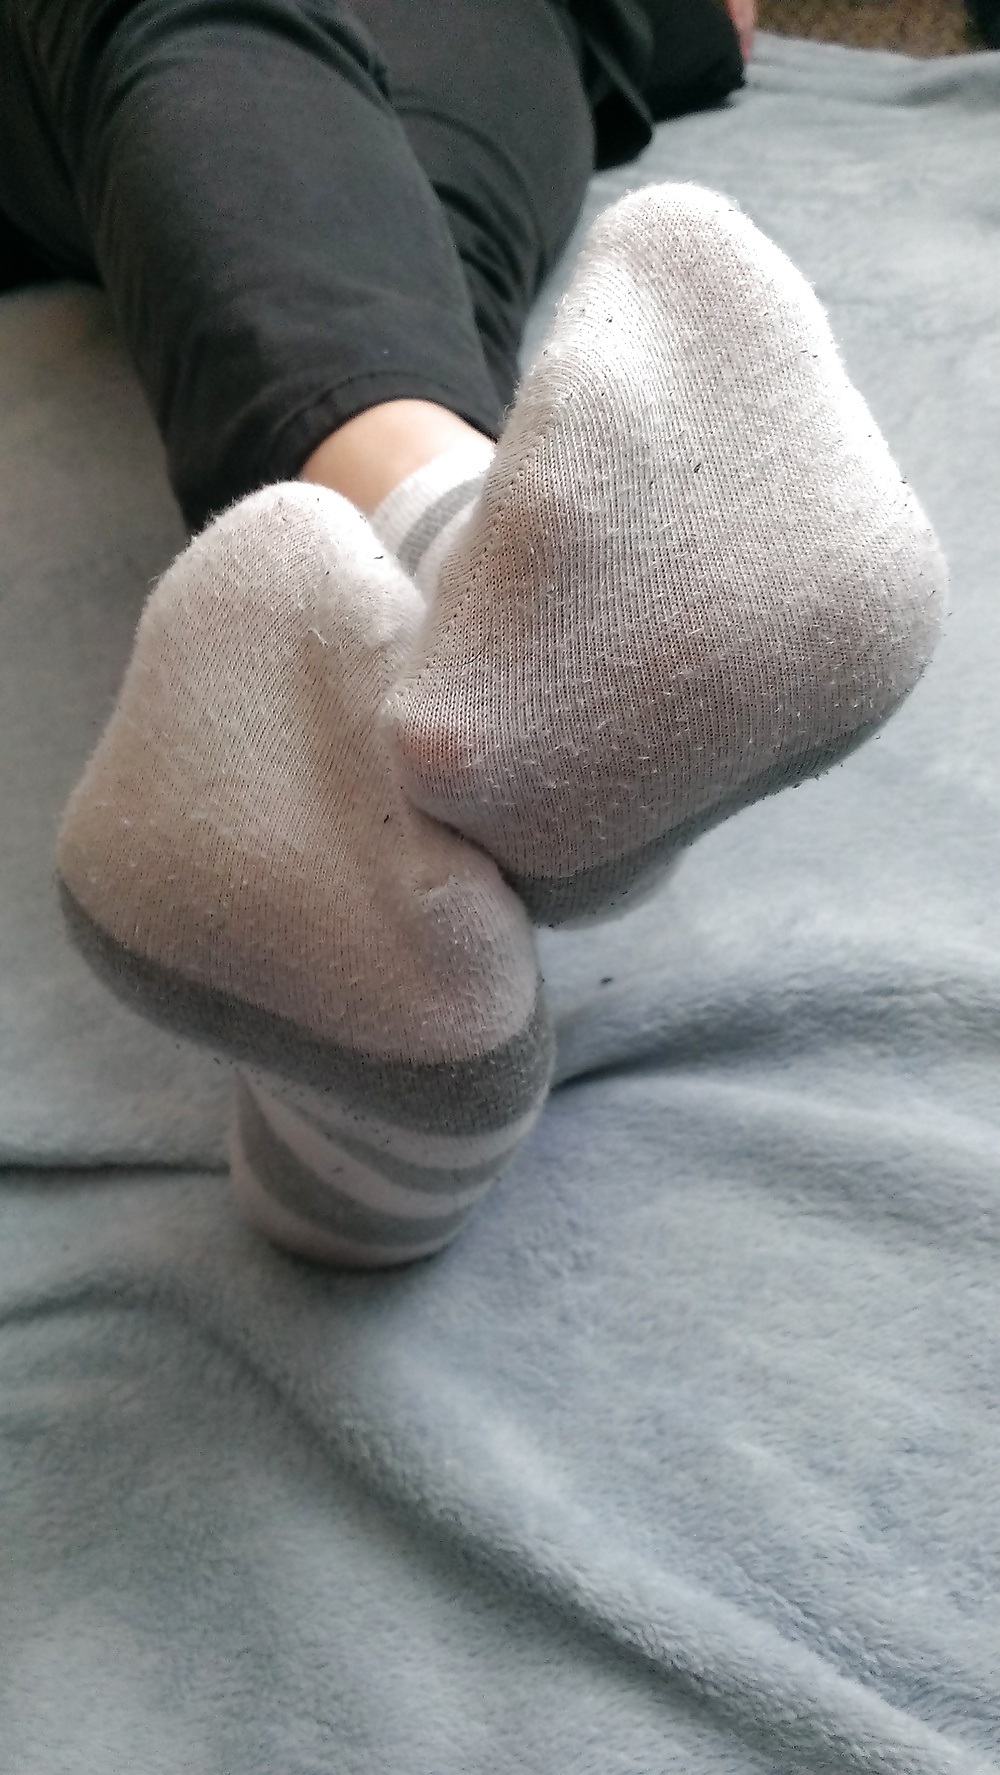 My Sweaty Socks from the Gym #26875111